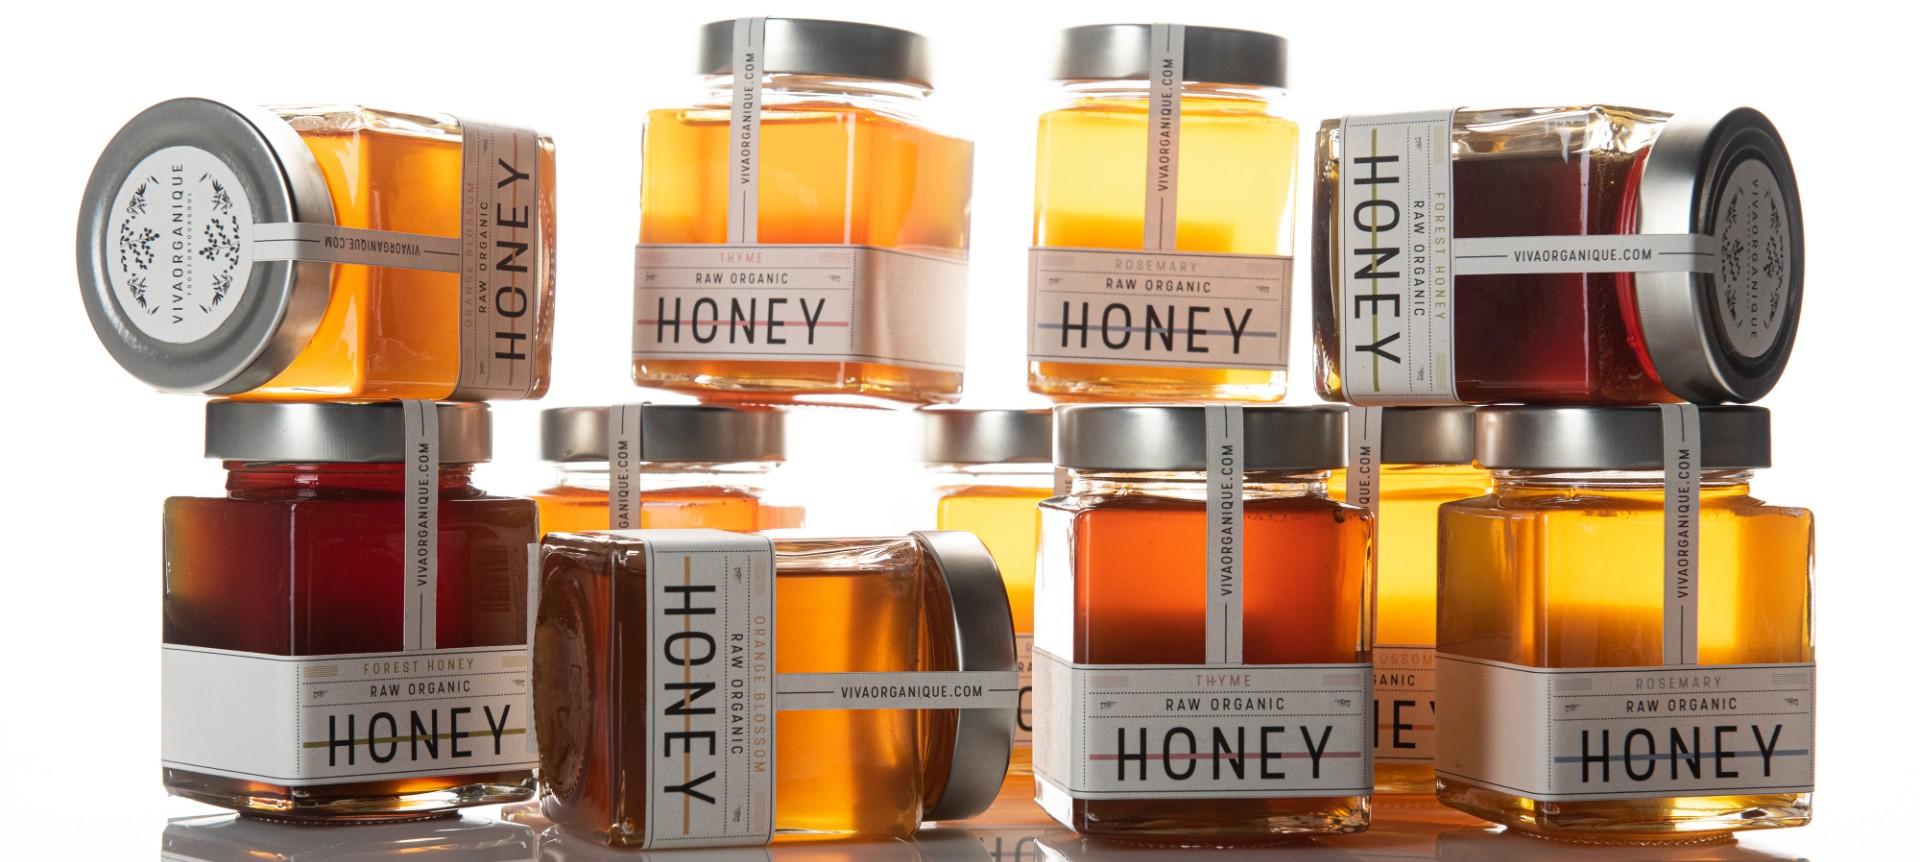 Honey Vivaorganique